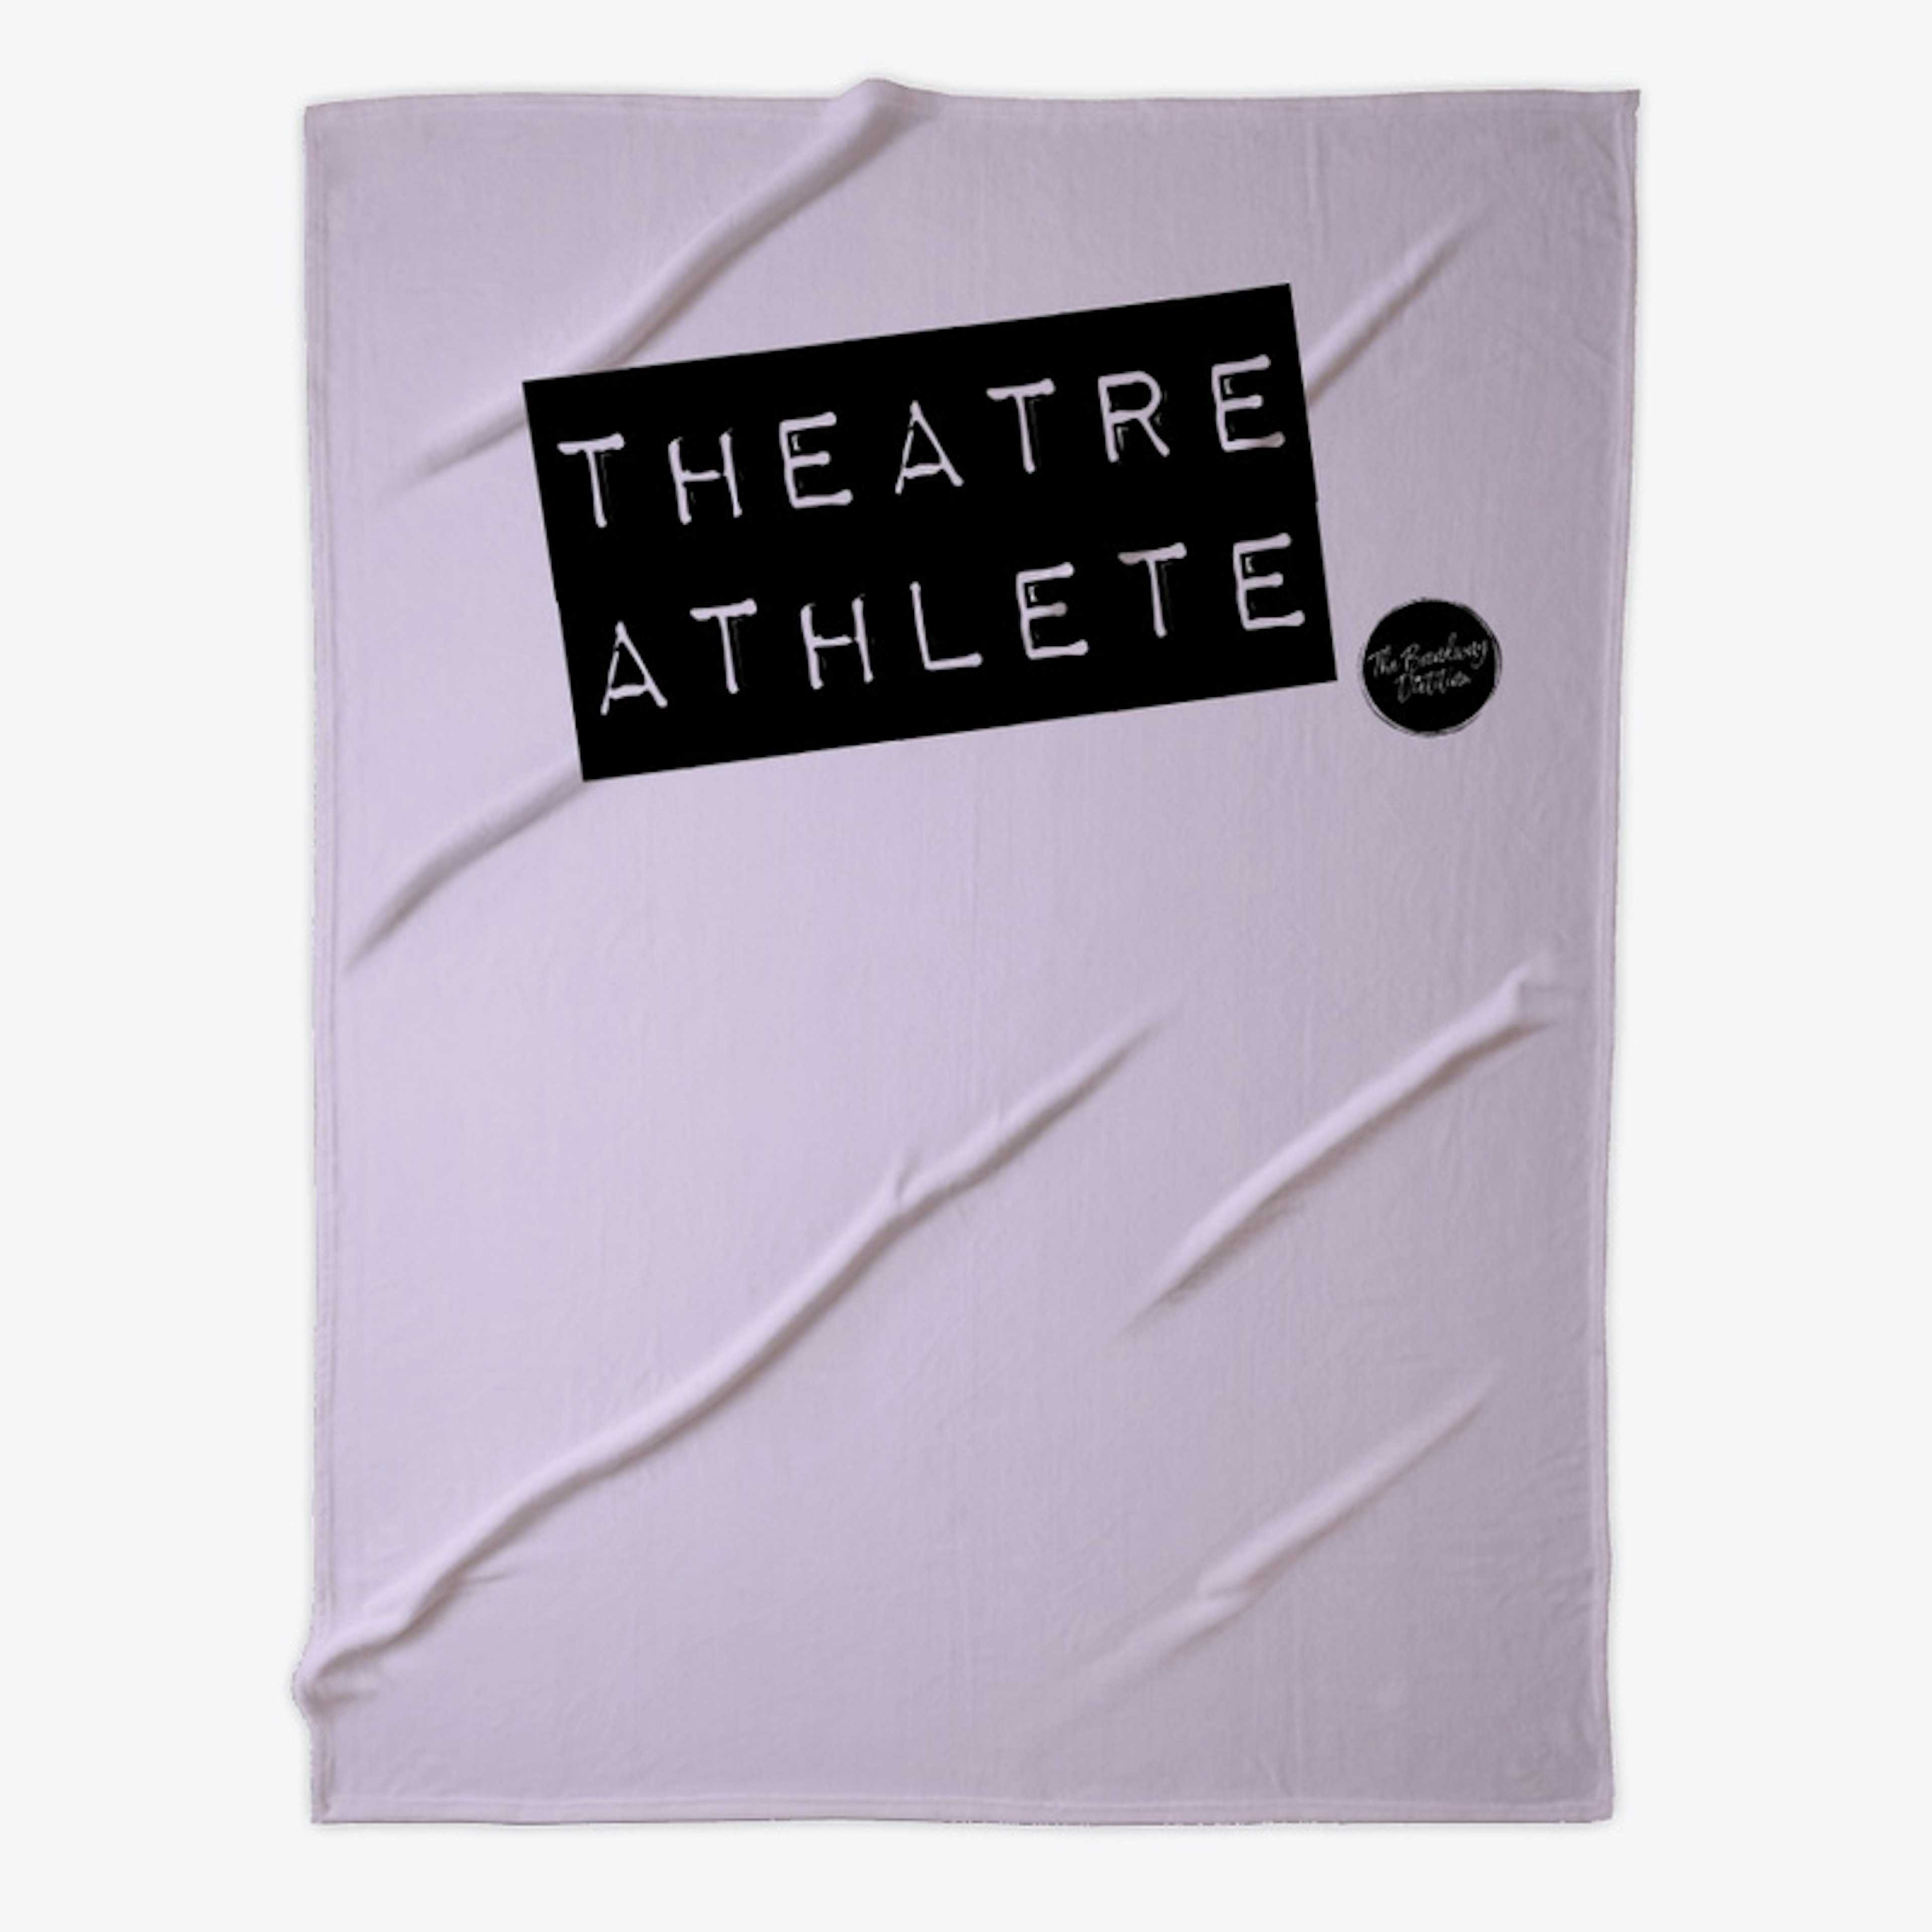 Theatre Athlete